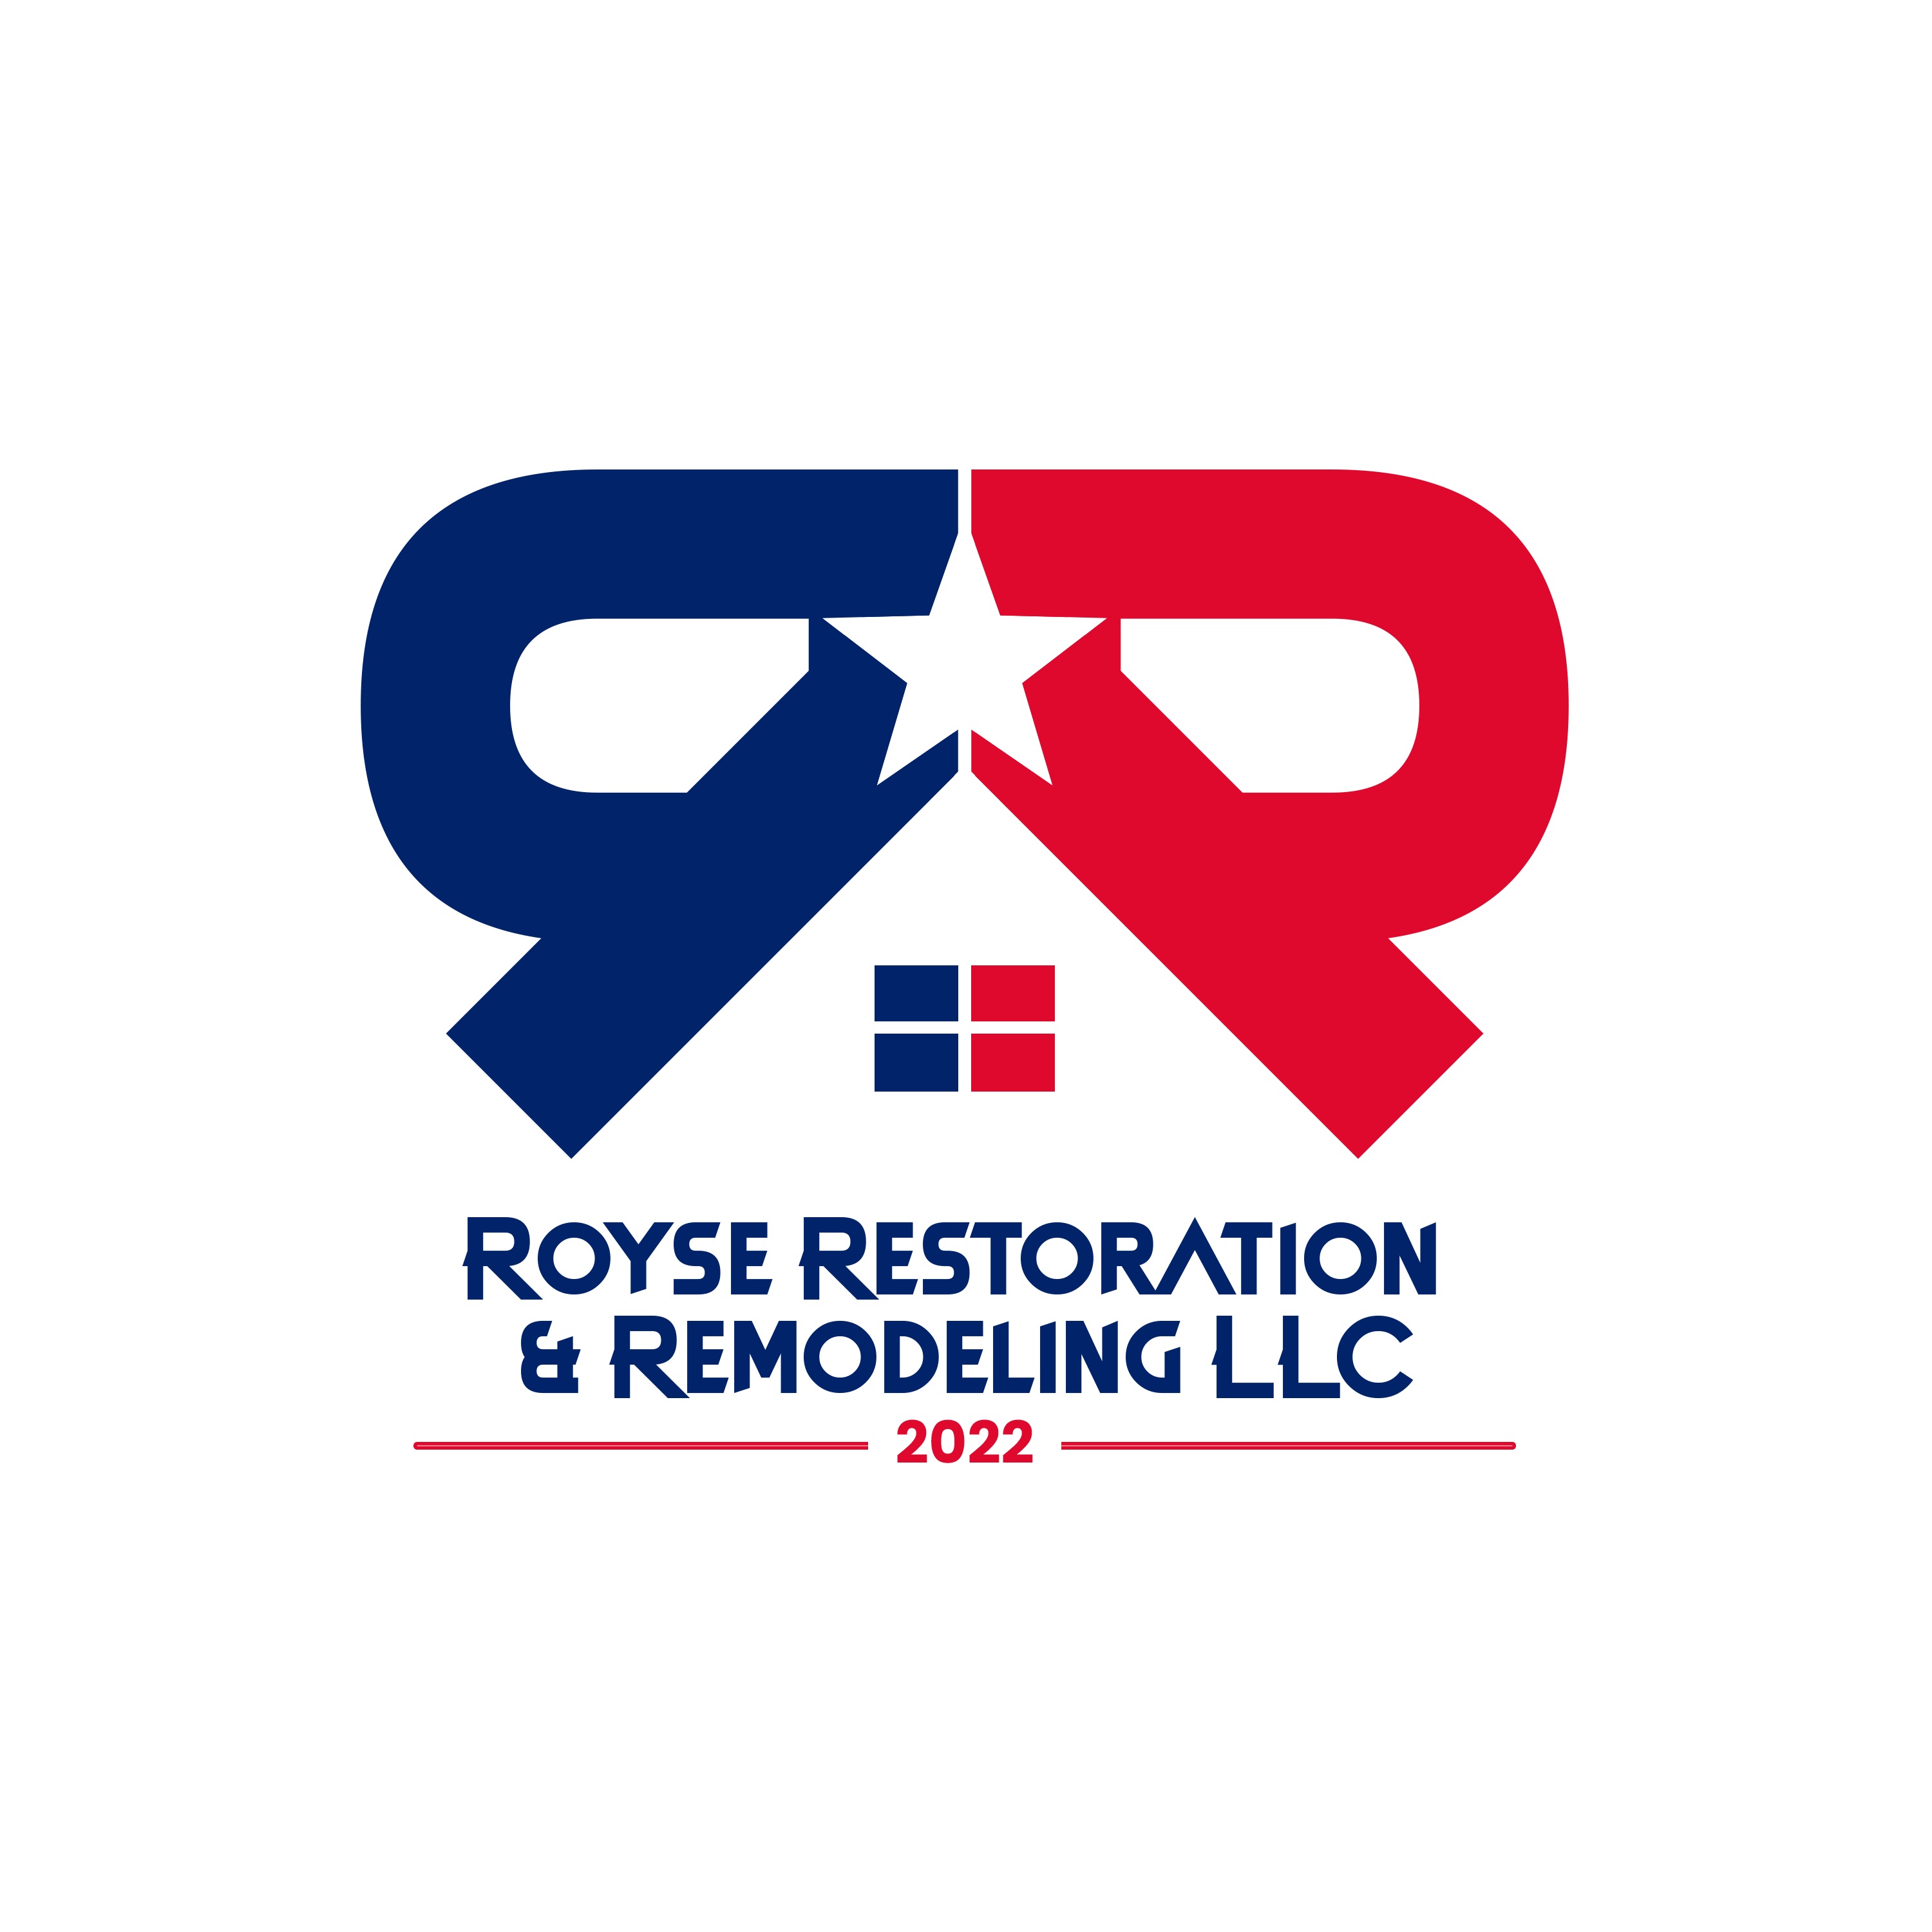 Royse Restoration & Remodeling, LLC Logo